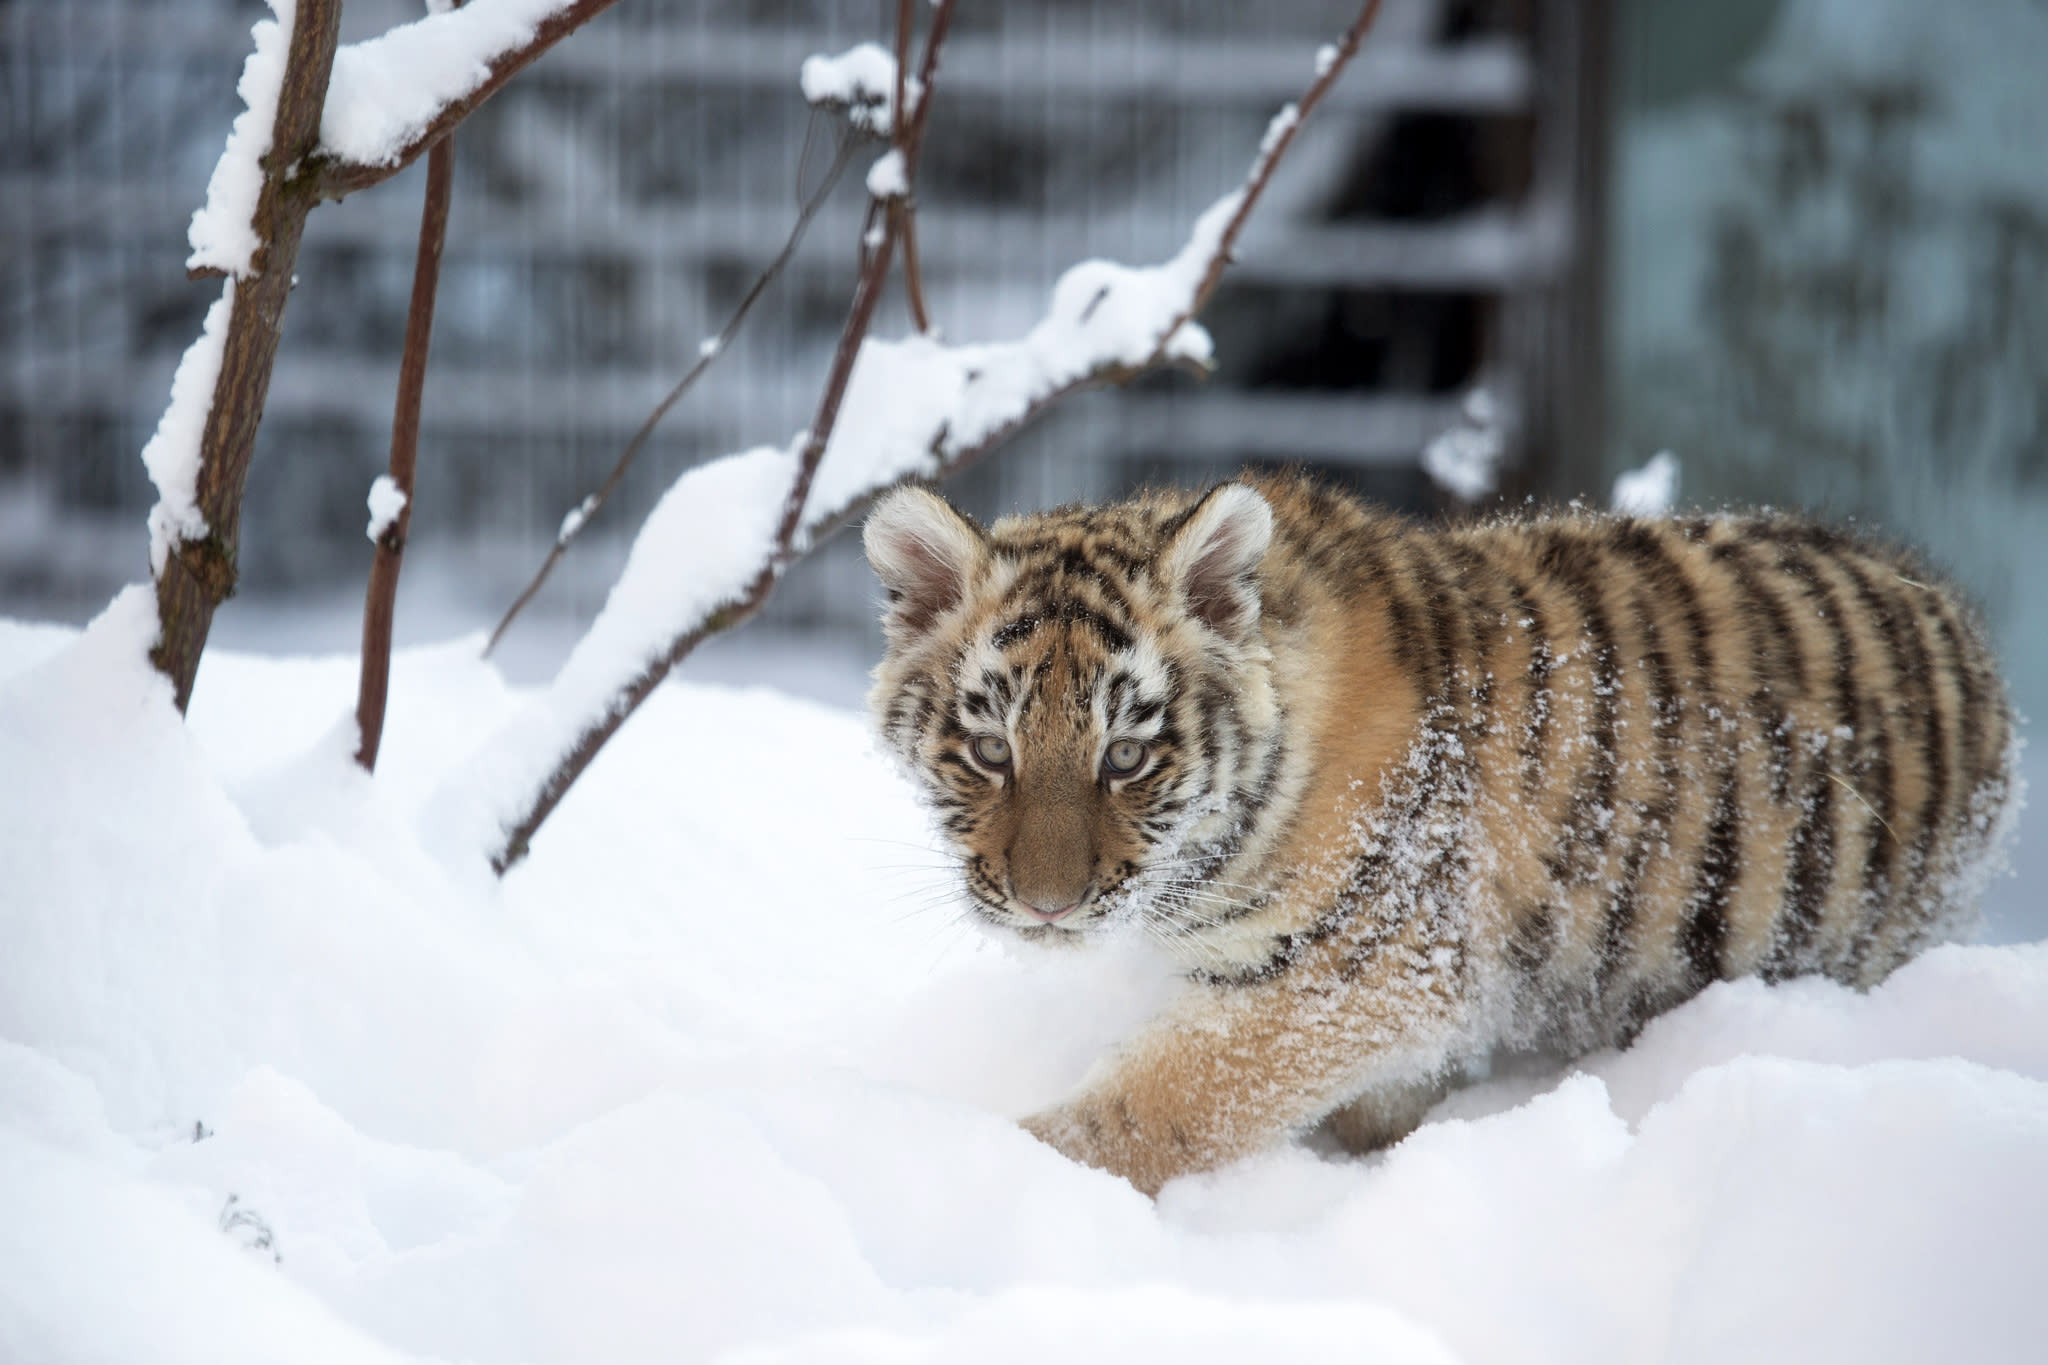 Helsinki Zoo’s Amur tiger cub died